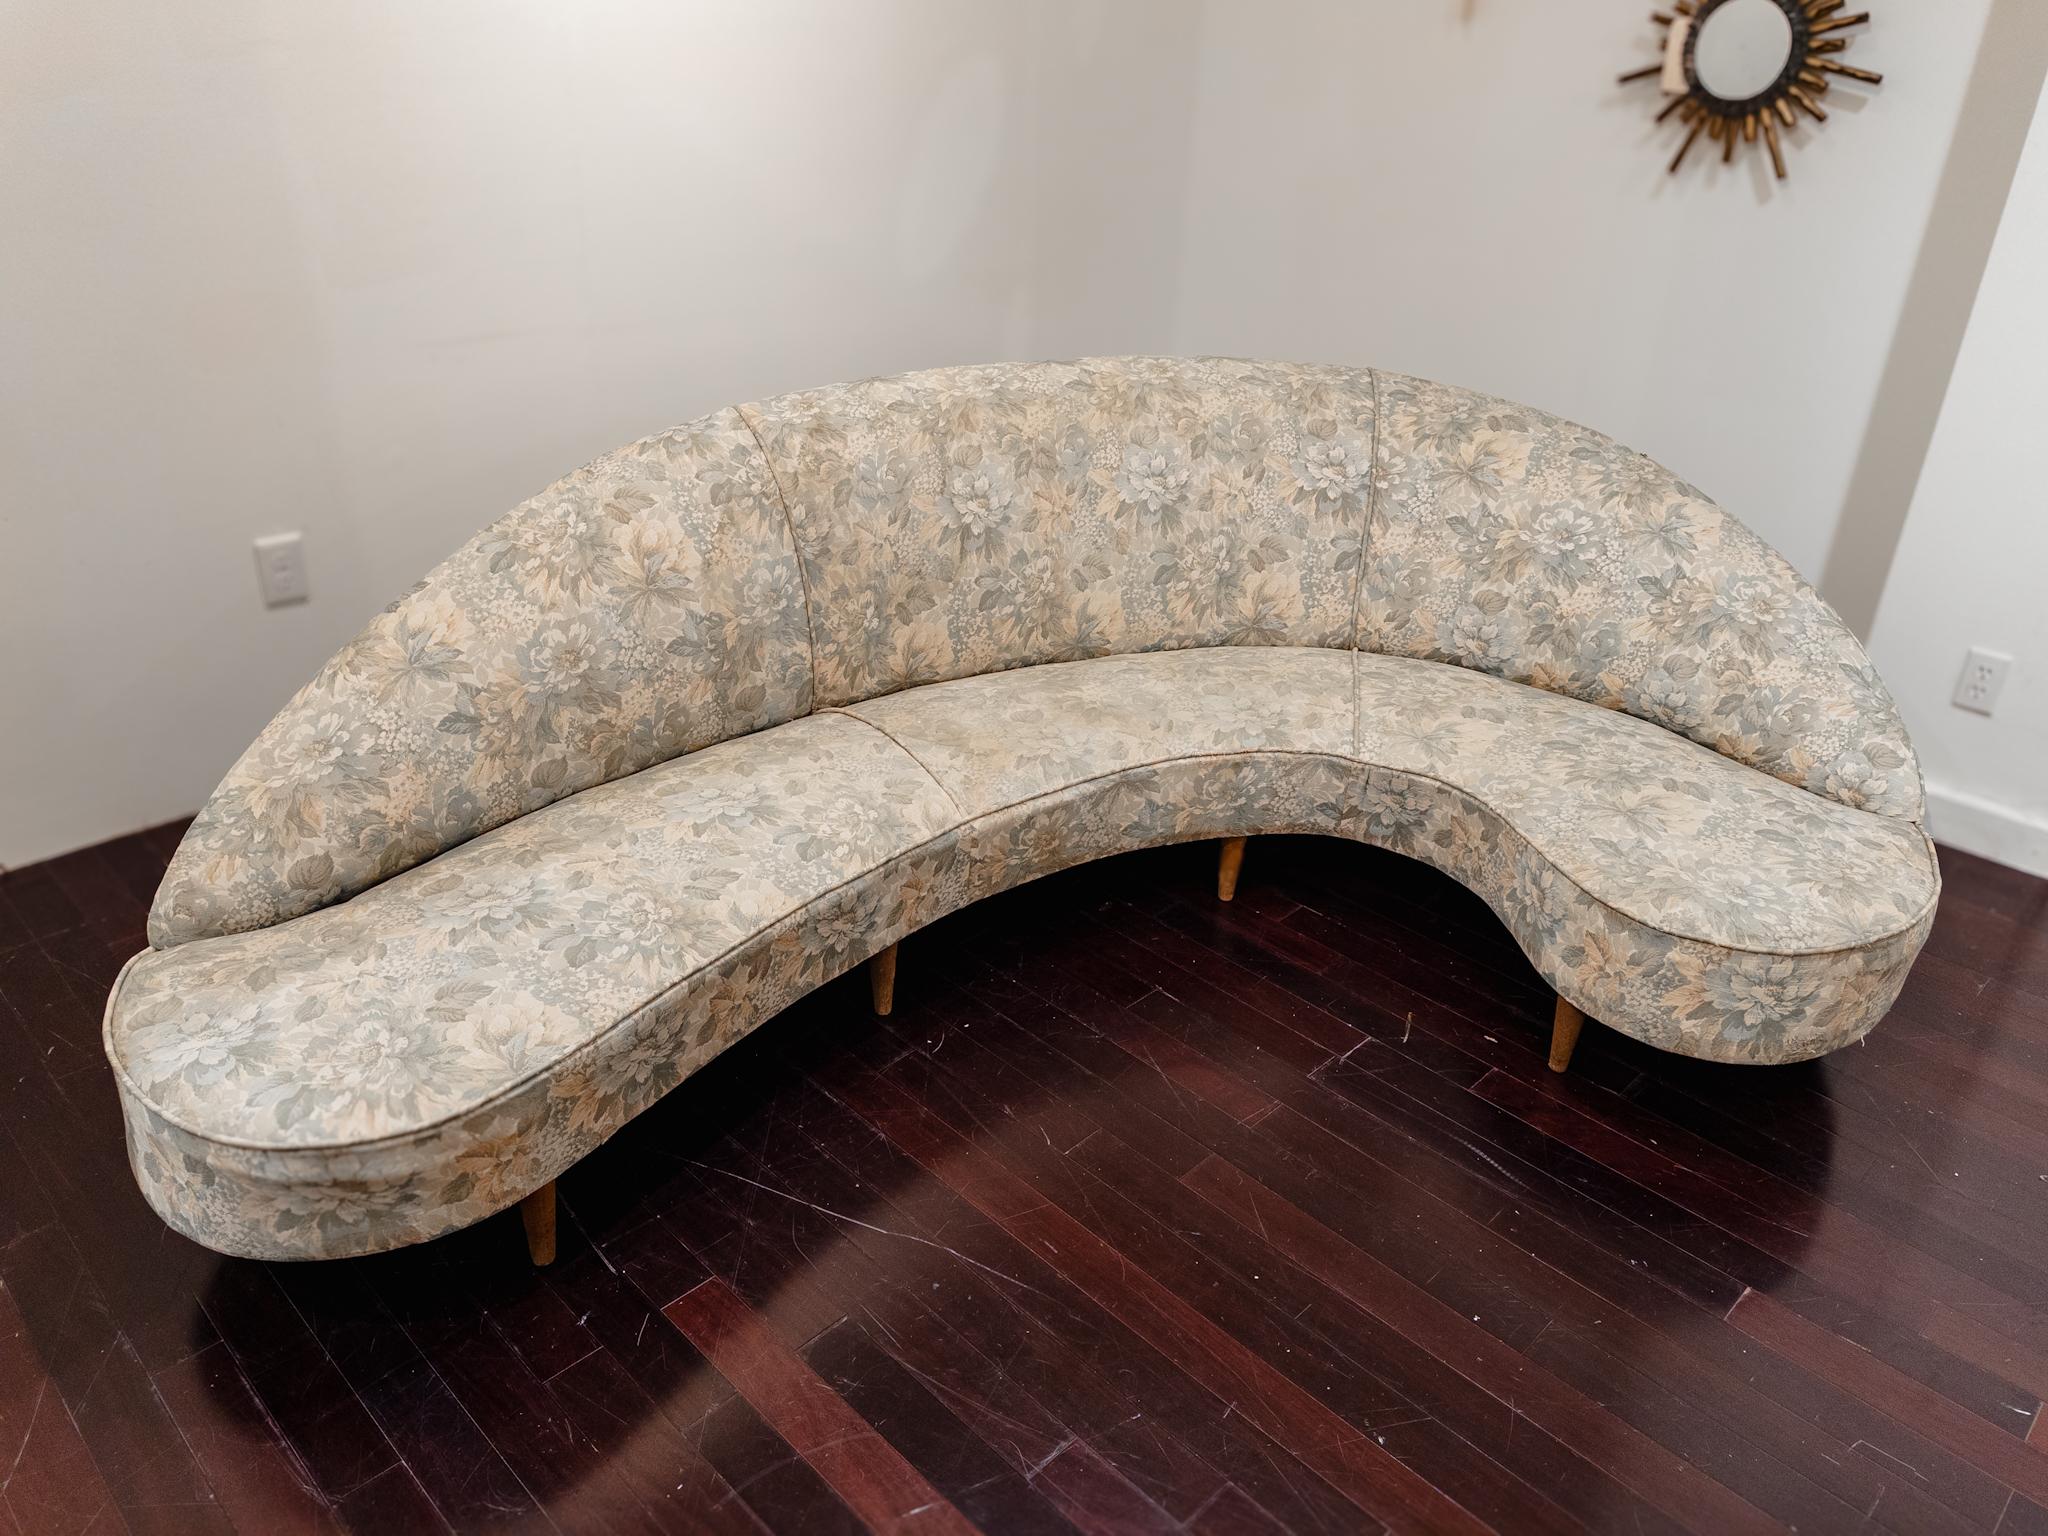 Das Original-Sofa von Federico Munari aus dem Jahr 1950 ist eine bleibende Ikone des Designs der Jahrhundertmitte, begehrt für seine zeitlose Eleganz und unübertroffene Handwerkskunst. Die schlanke Silhouette und die luxuriöse Brokatpolsterung